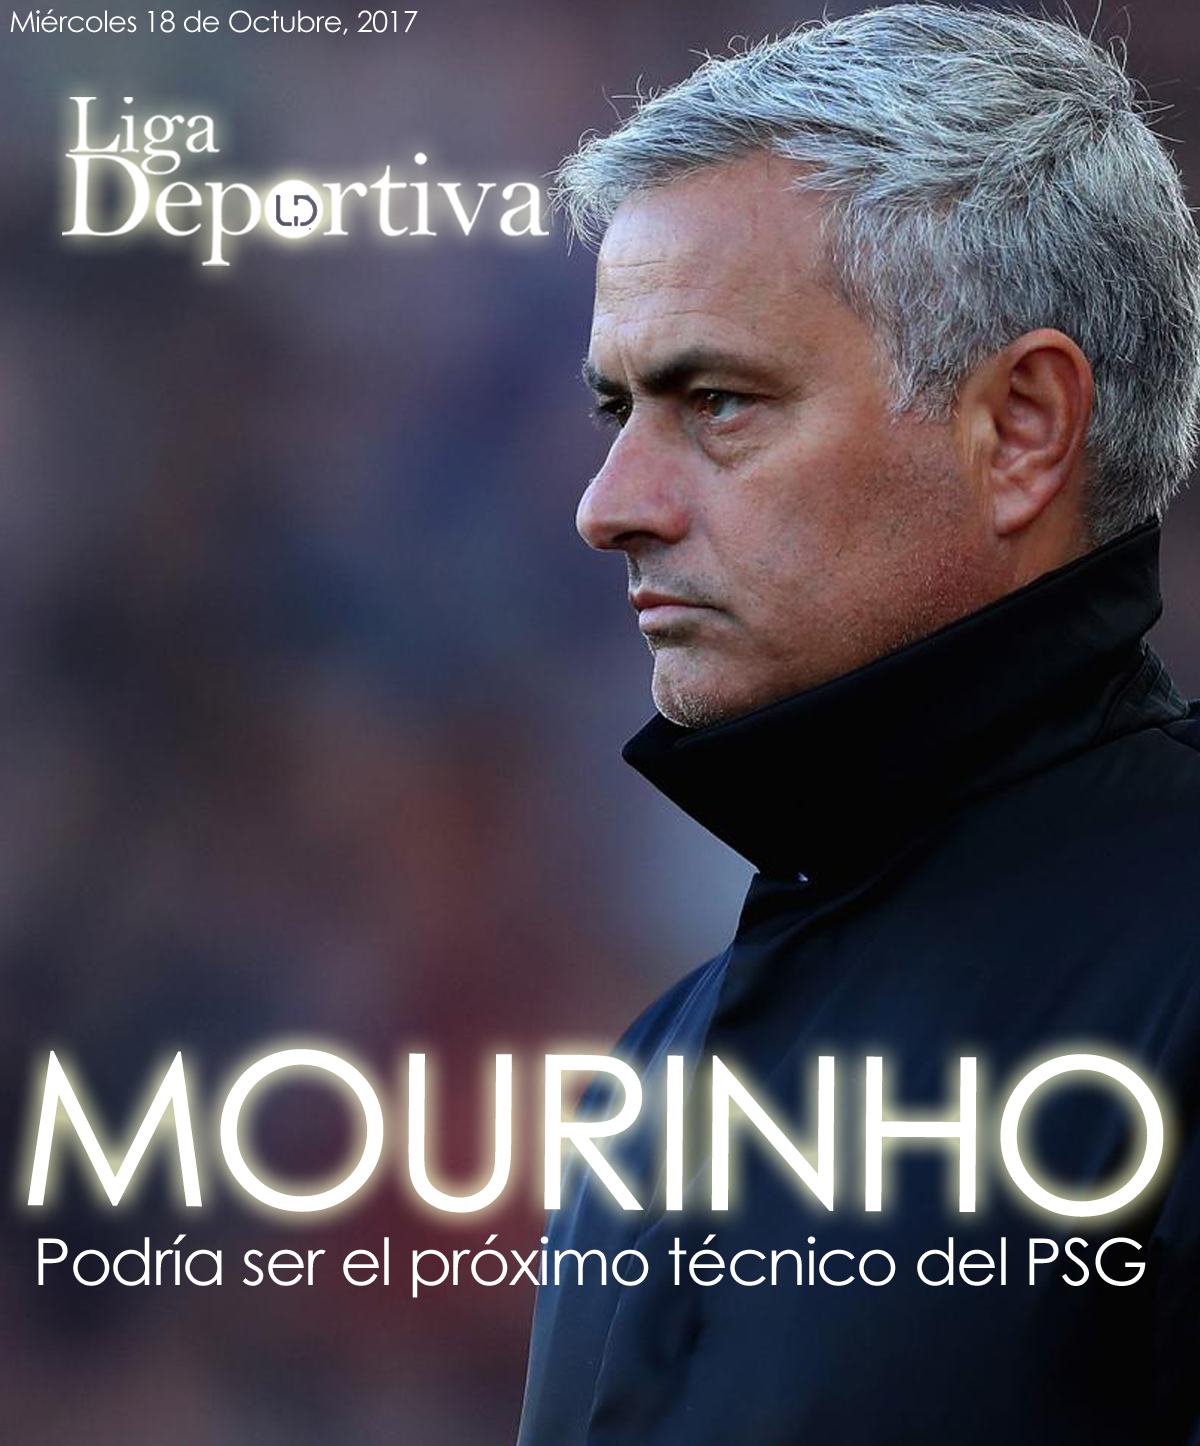 José Mourinho, podría ser el próximo técnico del PSG 